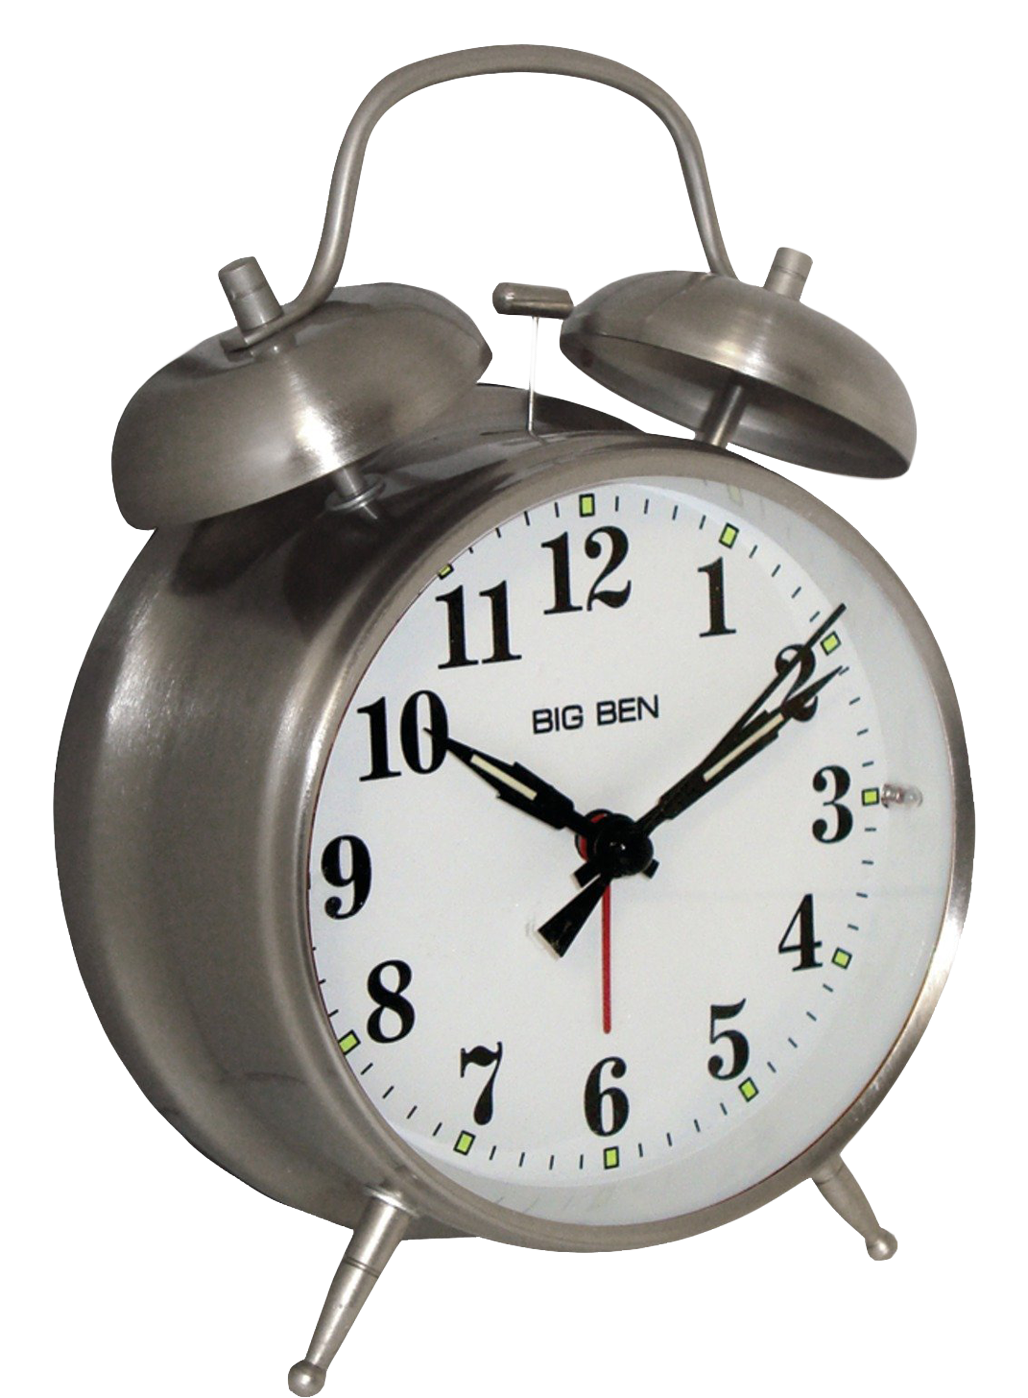 Alarm Pic Analog Clock Download HQ PNG Image